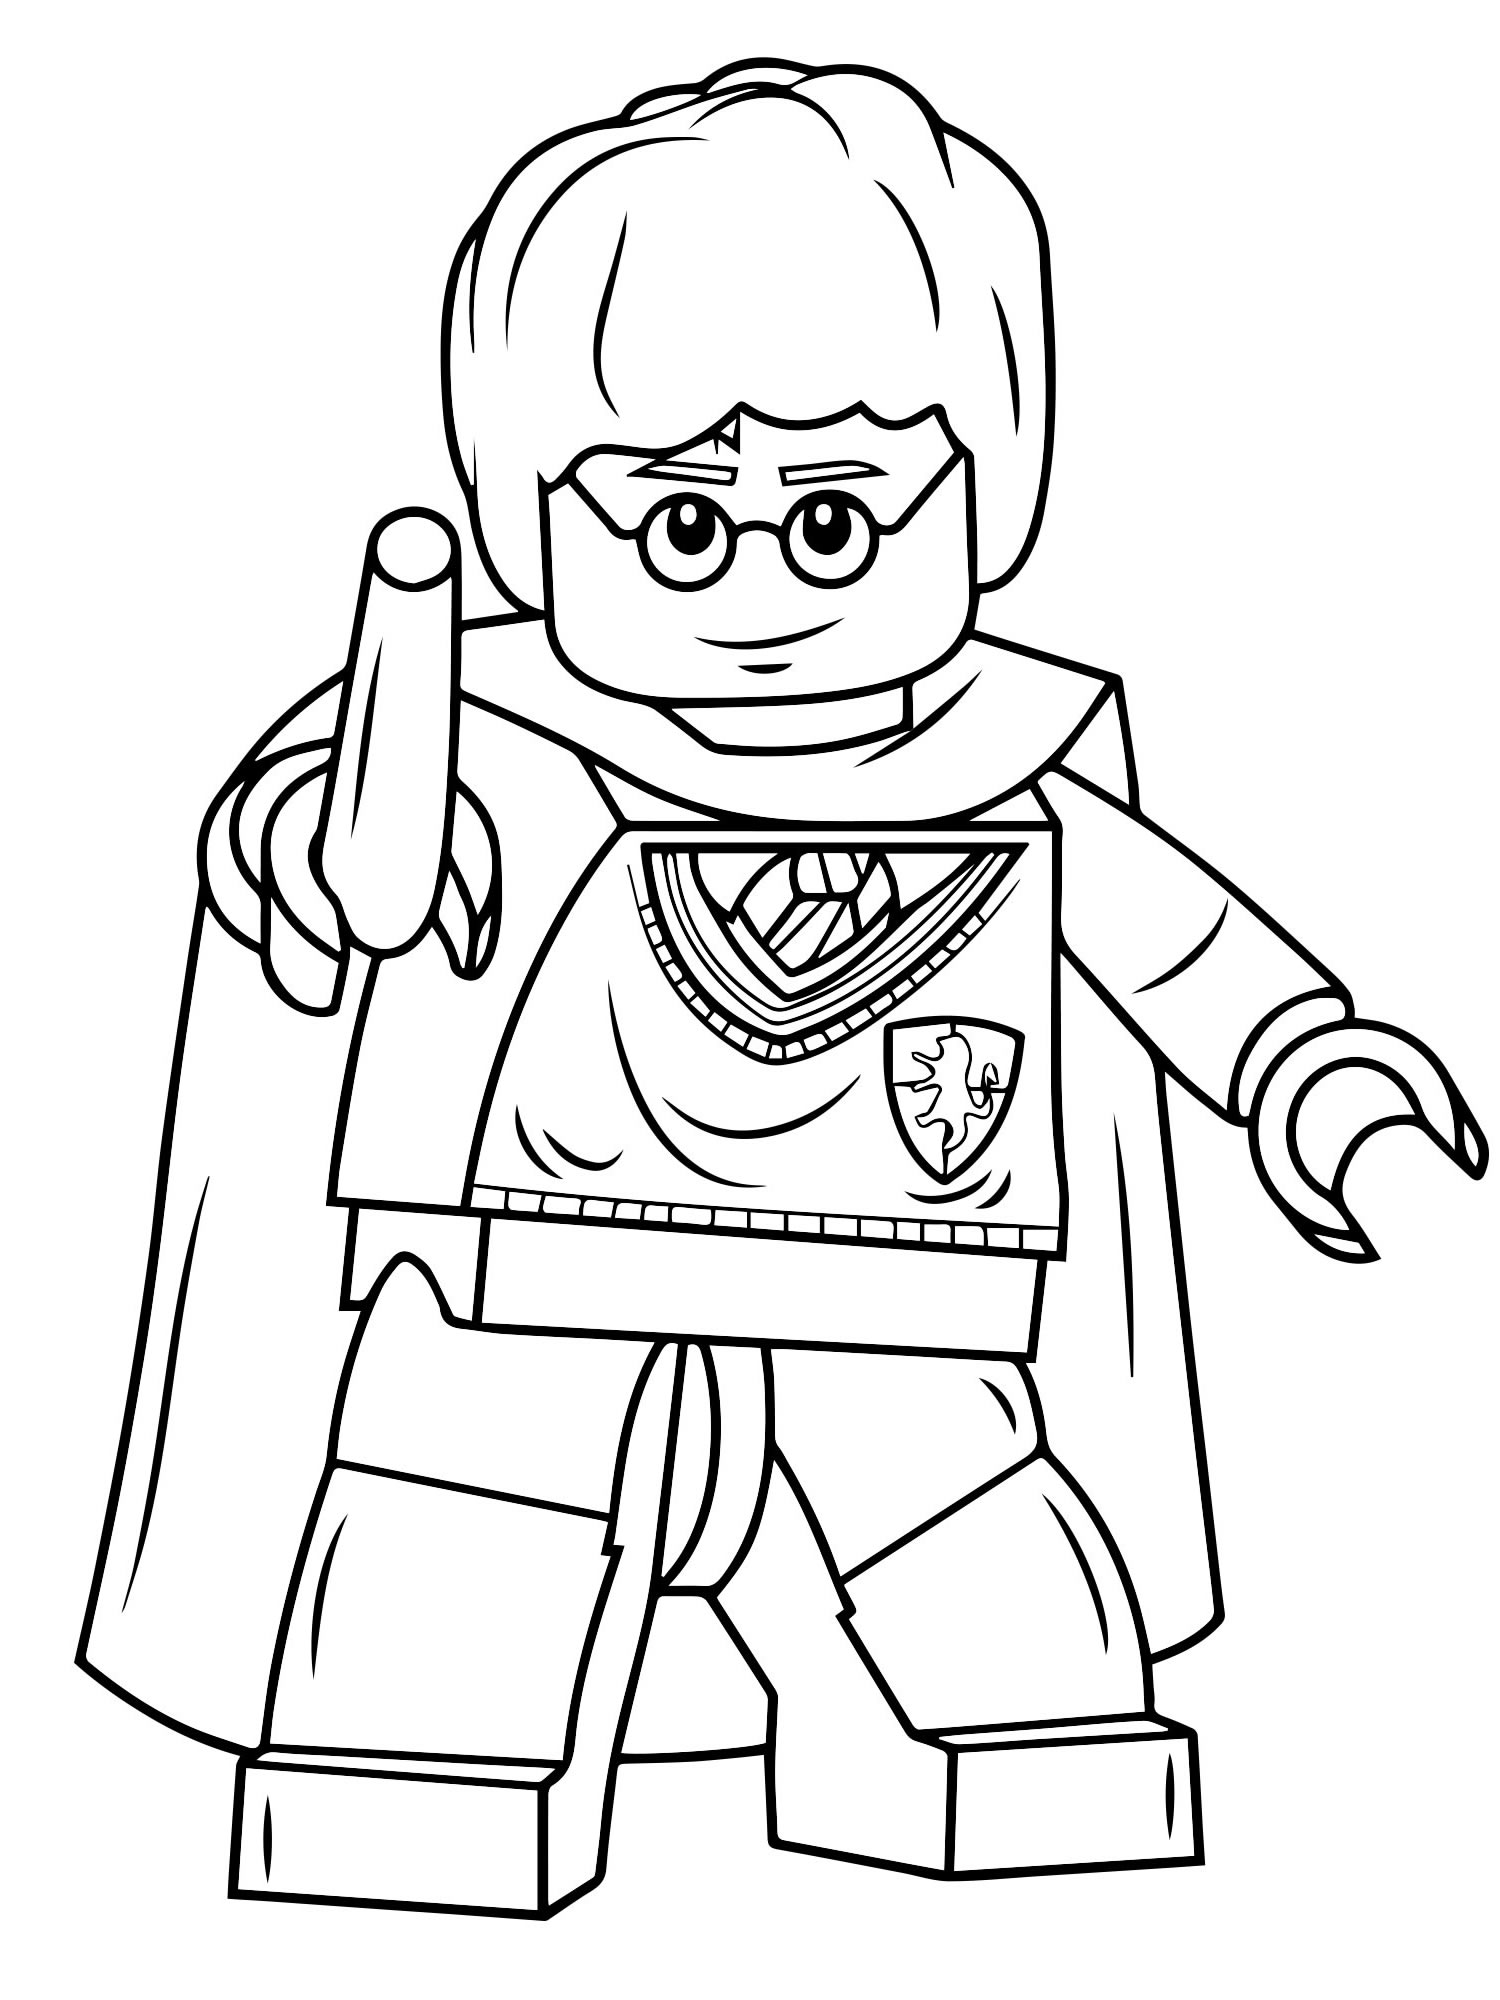 Гарри Поттер Лего раскраска для детей